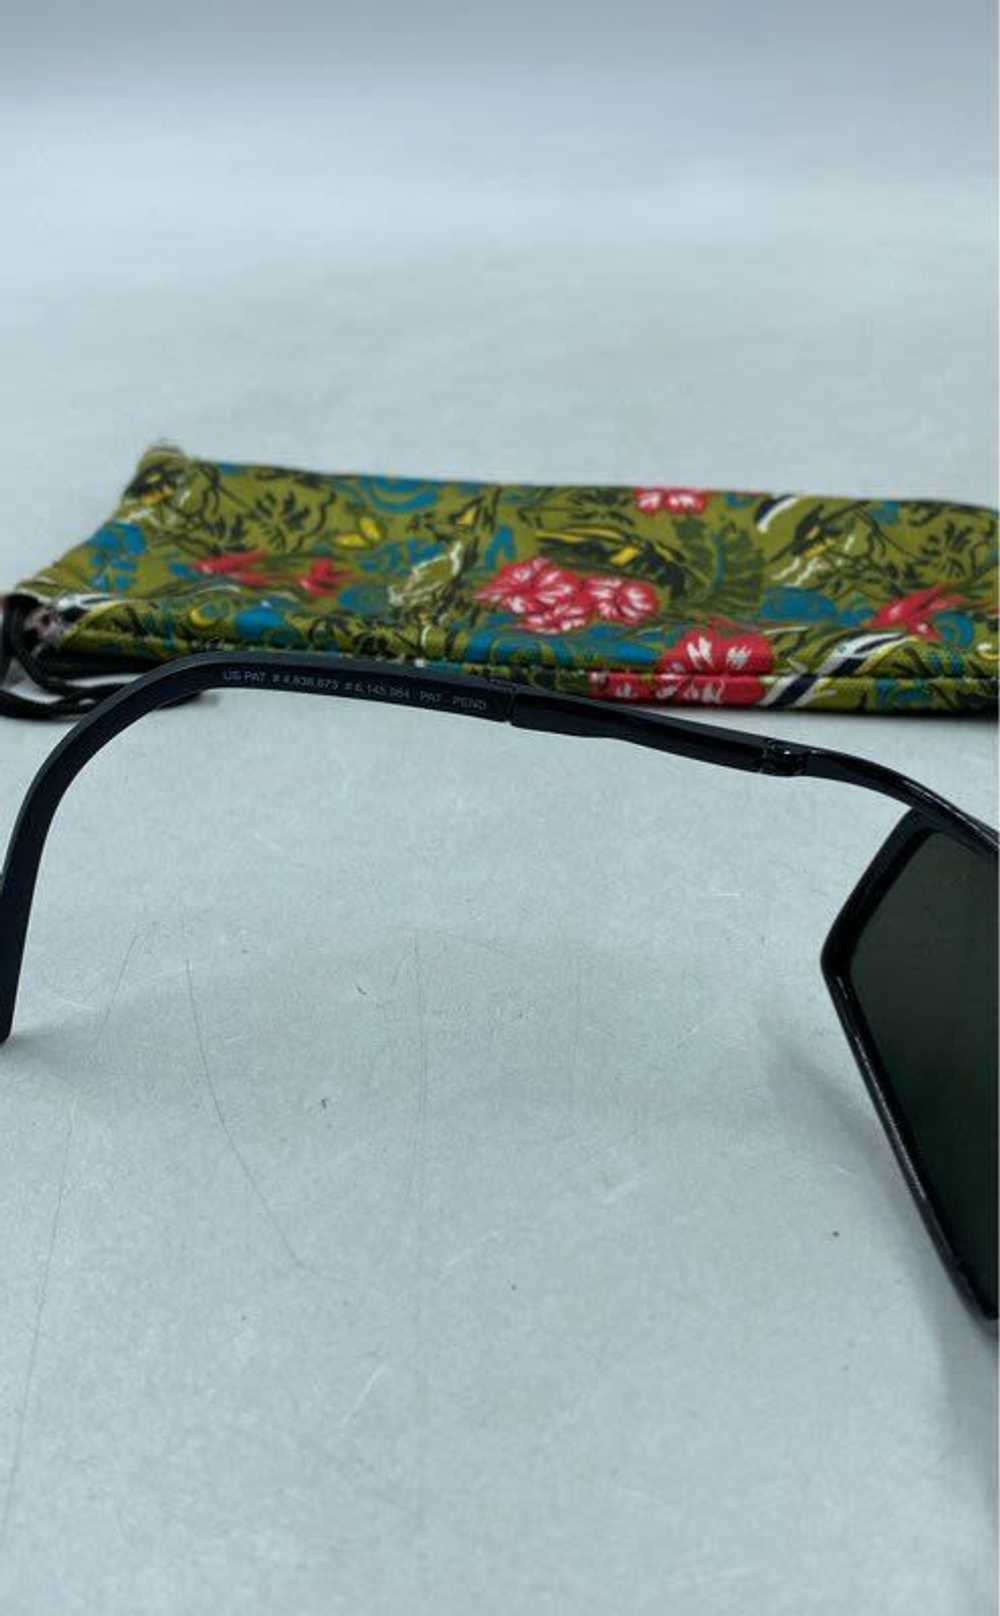 Maui Wear Maui Black Sunglasses - Size One Size - image 6